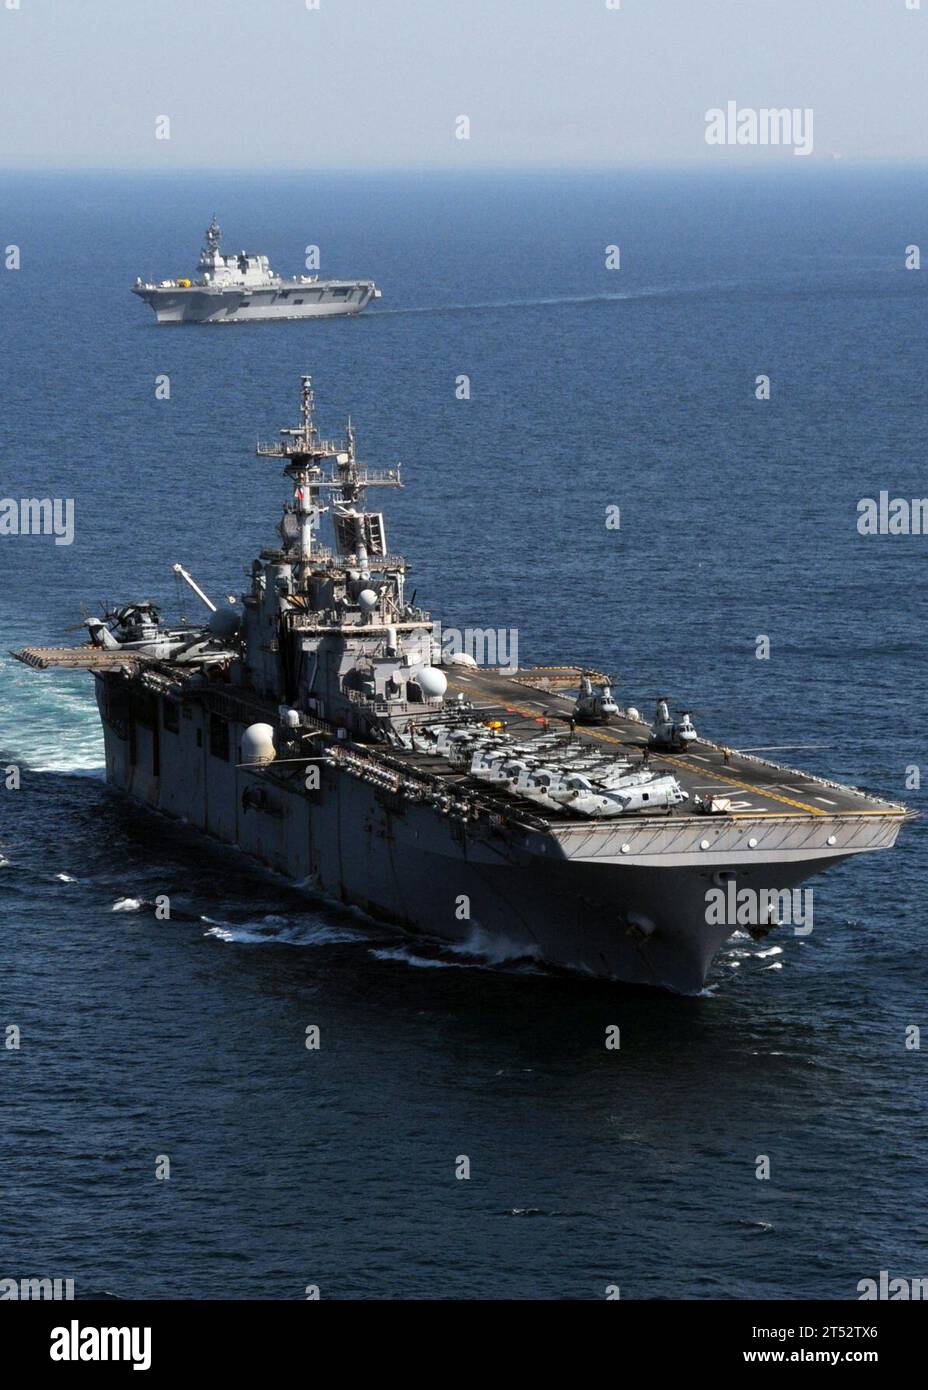 1104060120A-001 OCEANO PACIFICO (6 aprile 2011) la nave d'assalto anfibio schierata in avanti USS Essex (LHD 2) transita in formazione mentre la nave JS Hyuga (DDH 181) della Japan Maritime Self-Defense Force transita sullo sfondo. L'Essex e la 31st Marine Expeditionary Unit (31st MEU) imbarcati operano al largo delle coste di Kesenuma a sostegno dell'operazione Tomodachi. Foto Stock